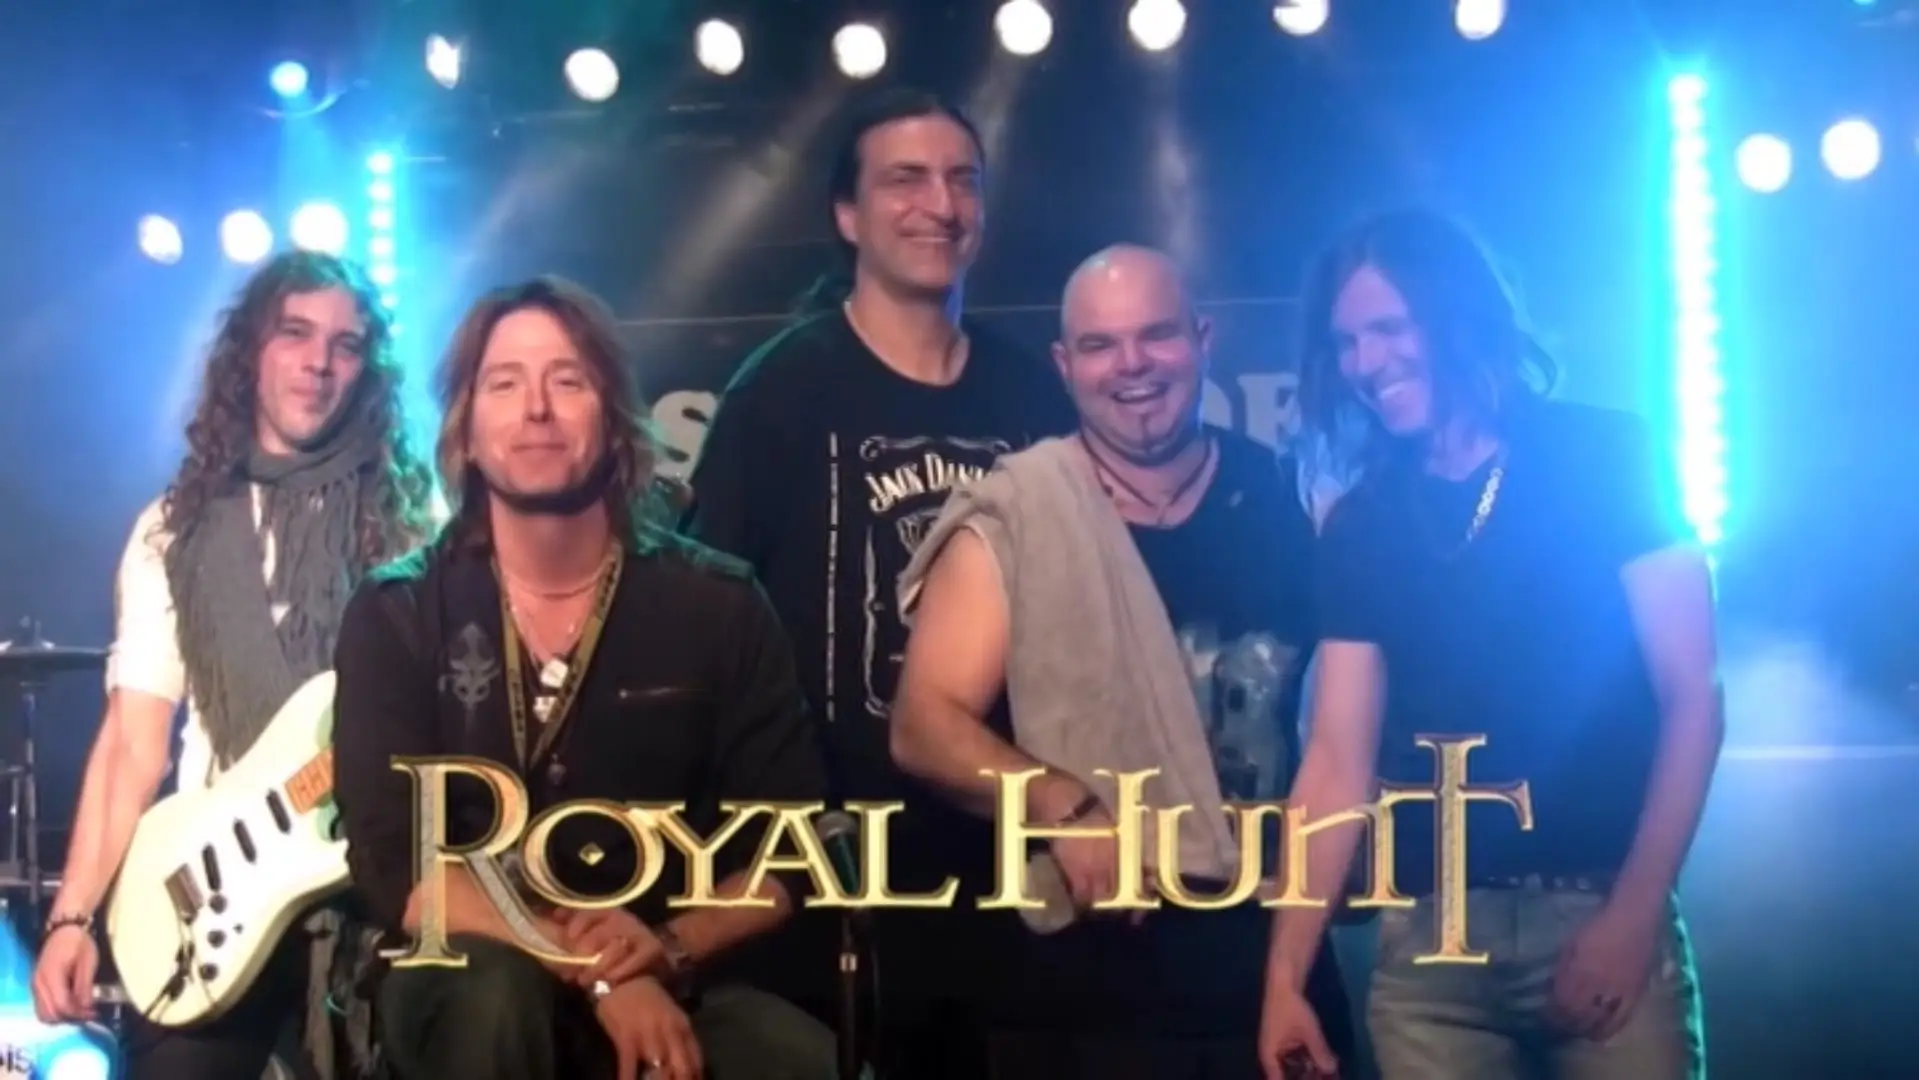 Royal hunt фото группы